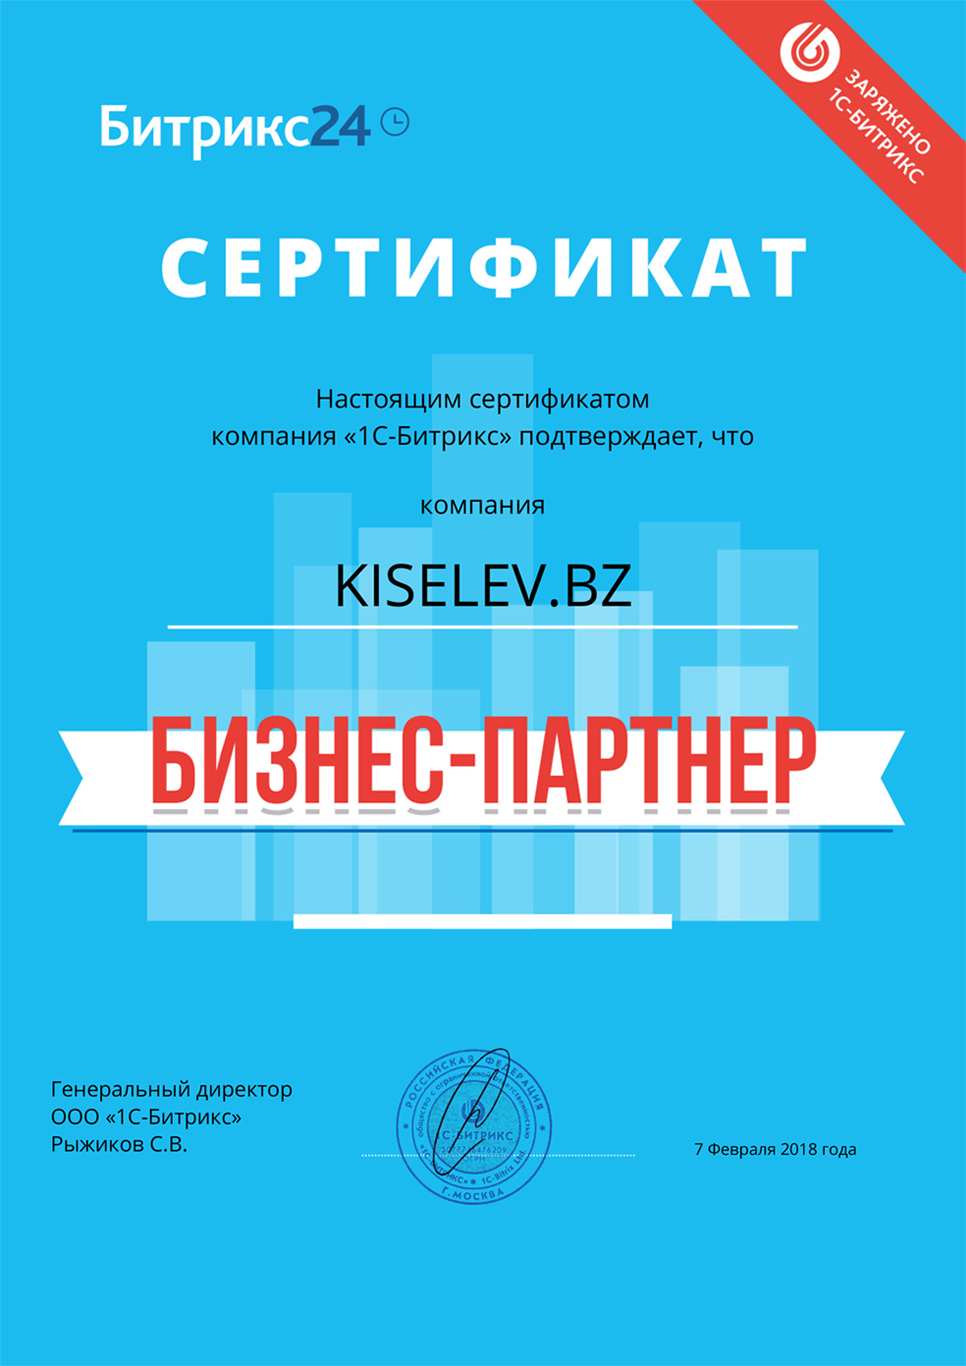 Сертификат партнёра по АМОСРМ в Сретенске